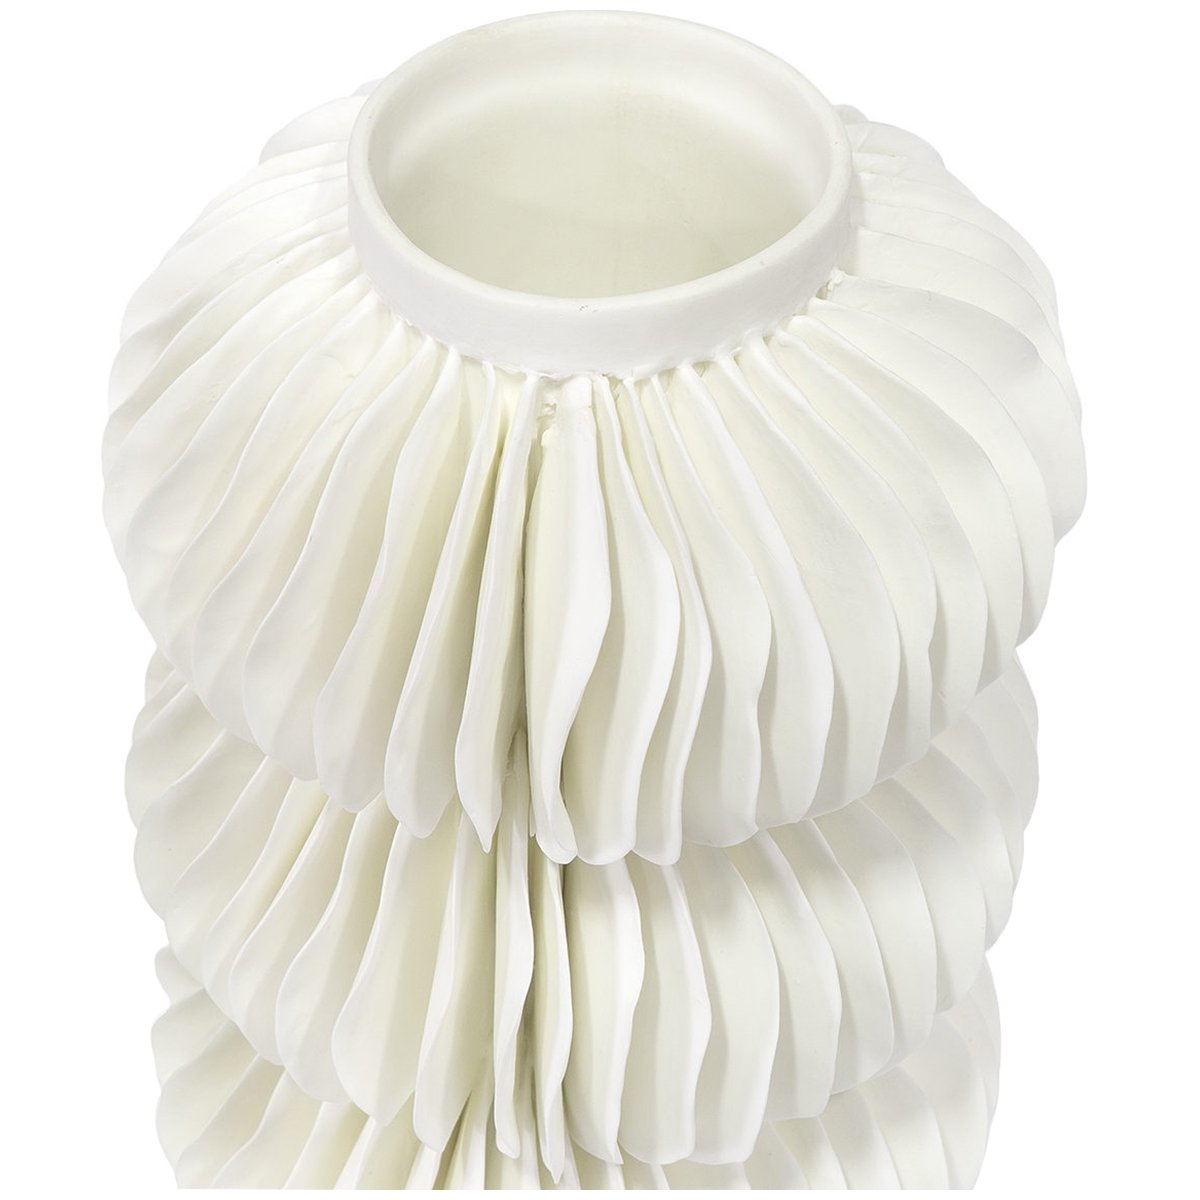 Palecek Antilles Porcelain Vase, Tall